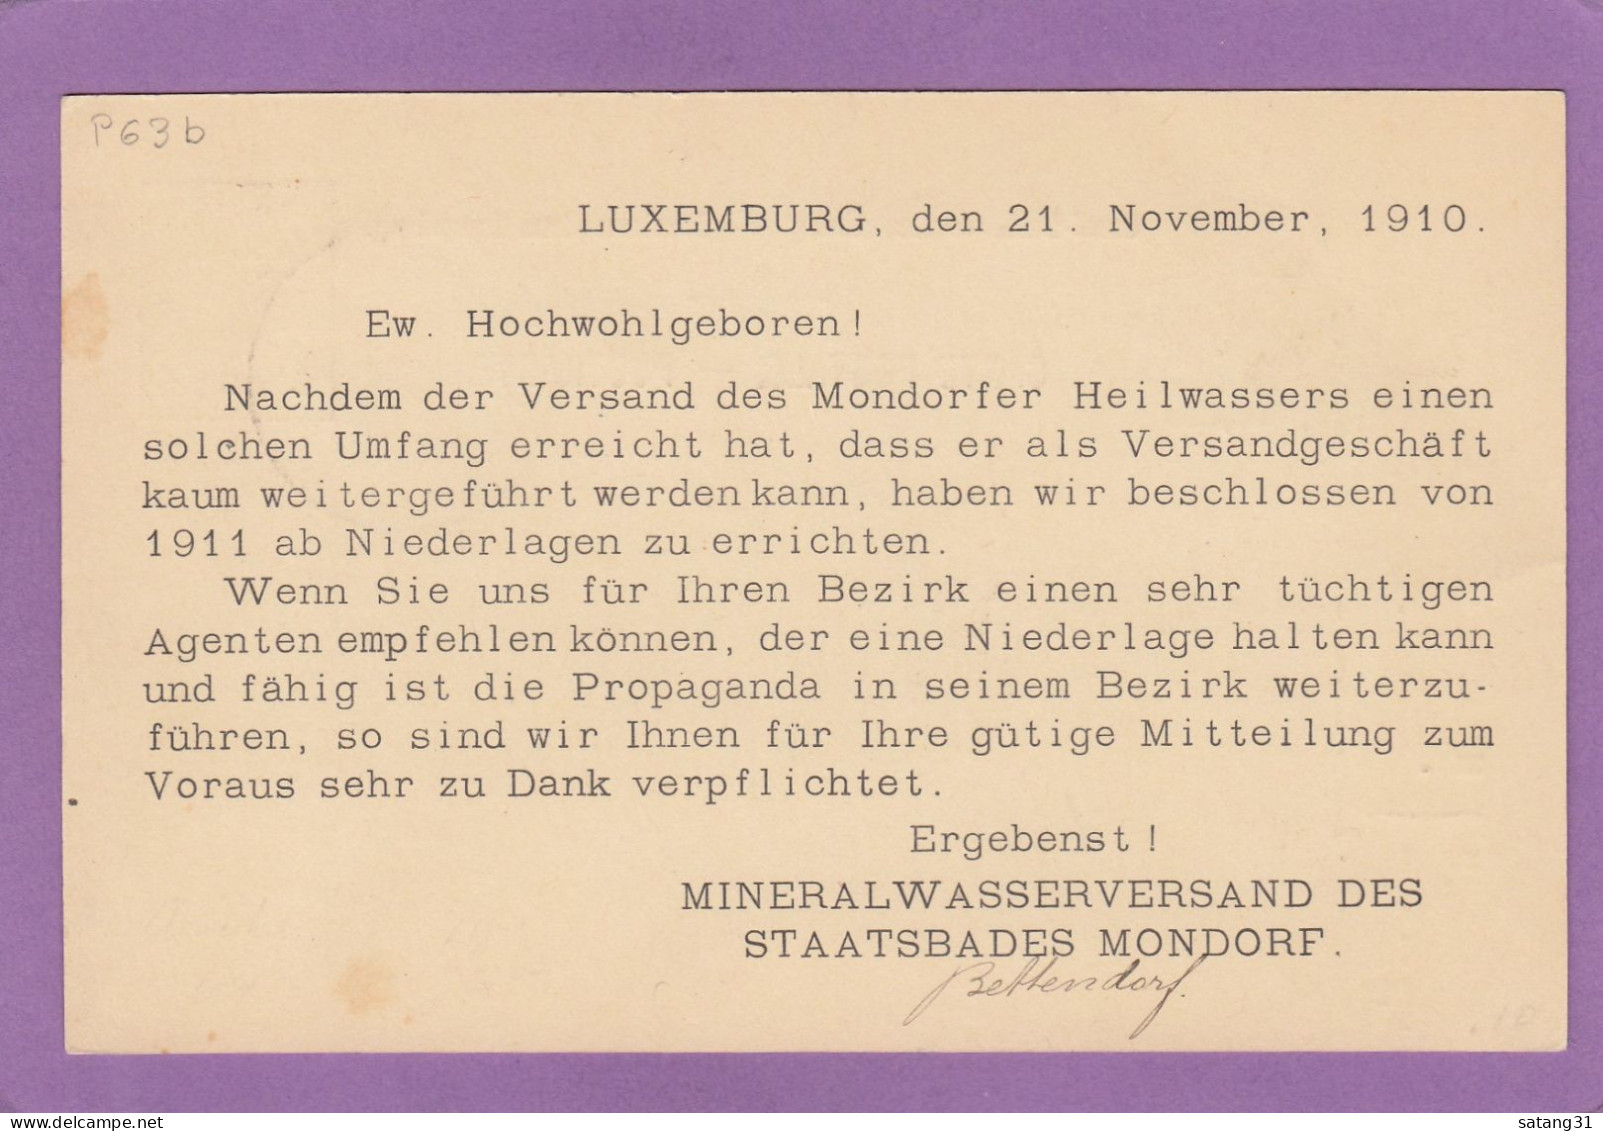 MINERALWASSERVERBAND DES STAATSBADES MONDORF. GANZSACHE NACH TORGAU,DEUTSCHLAND,1910. - Ganzsachen